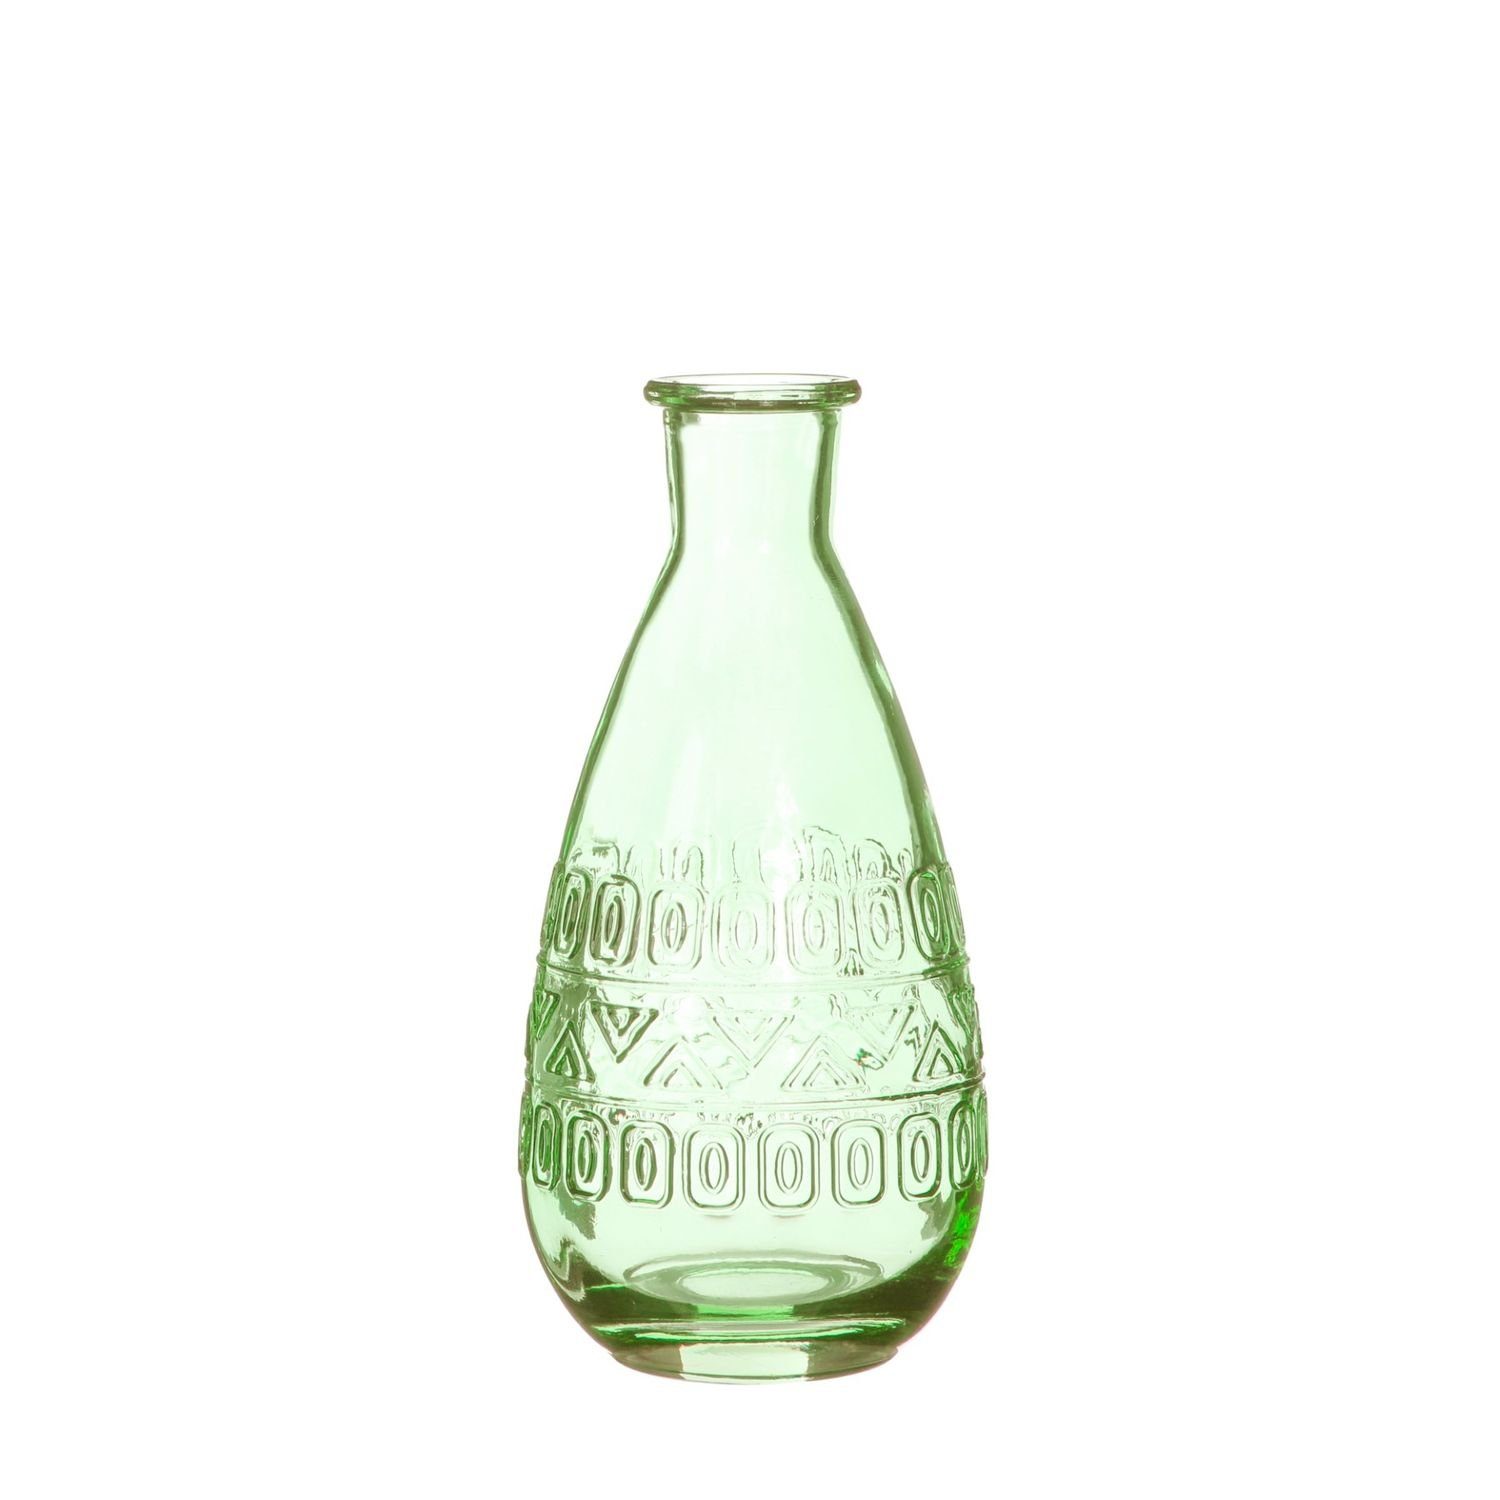 NaDeco Dekovase Glas Flasche Rome in Hellgrün h. 15,8 cm Ø 7,5 cm